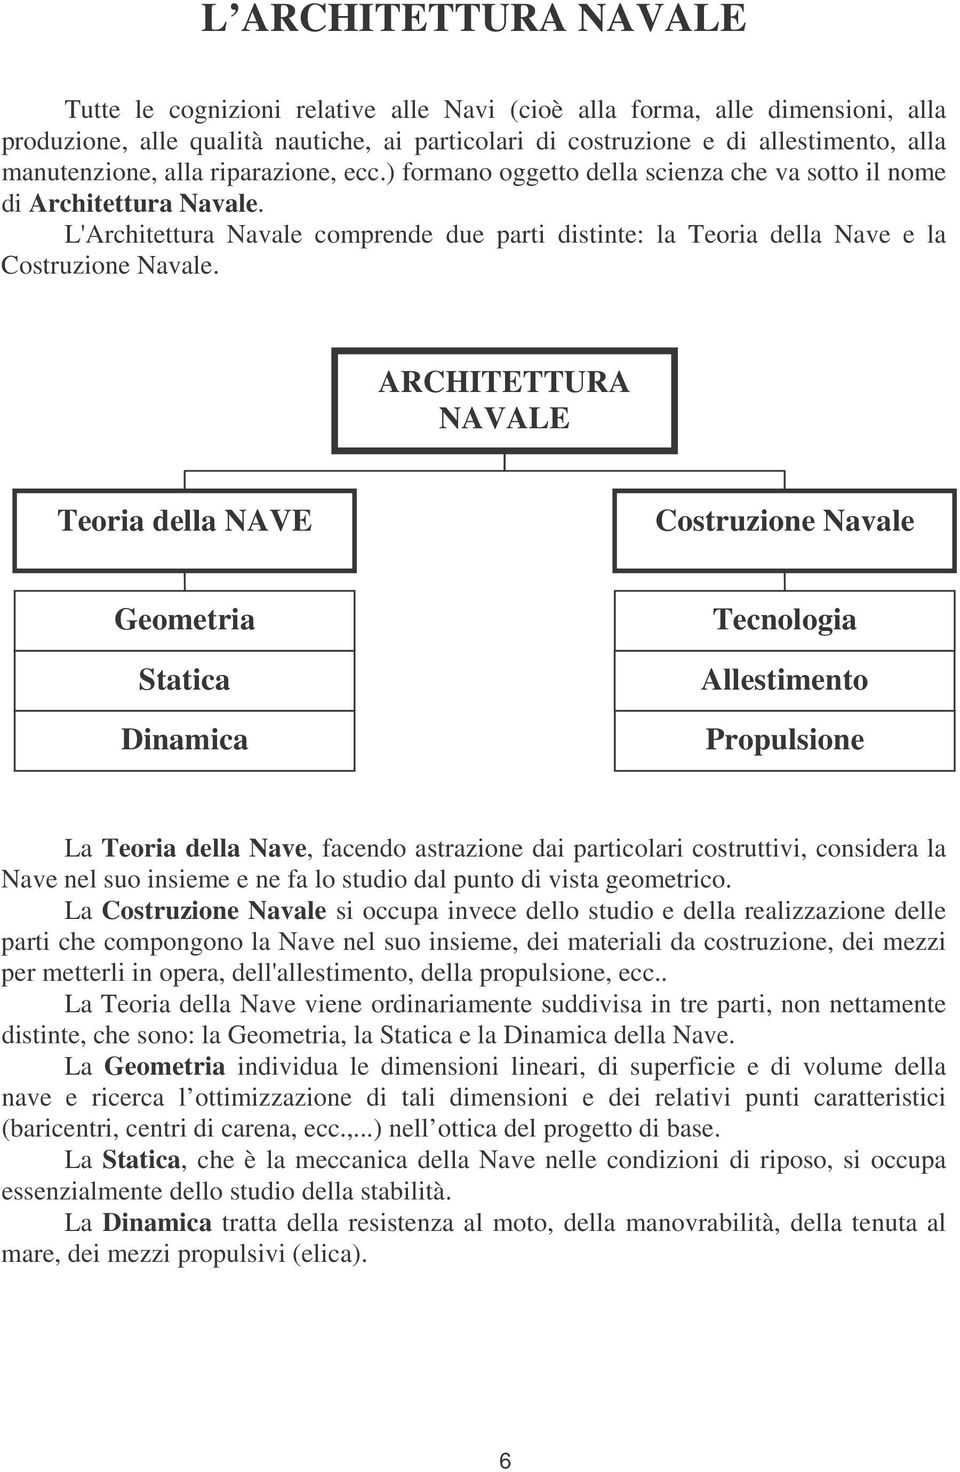 L'Architettura Navale comprende due parti distinte: la Teoria della Nave e la Costruzione Navale.